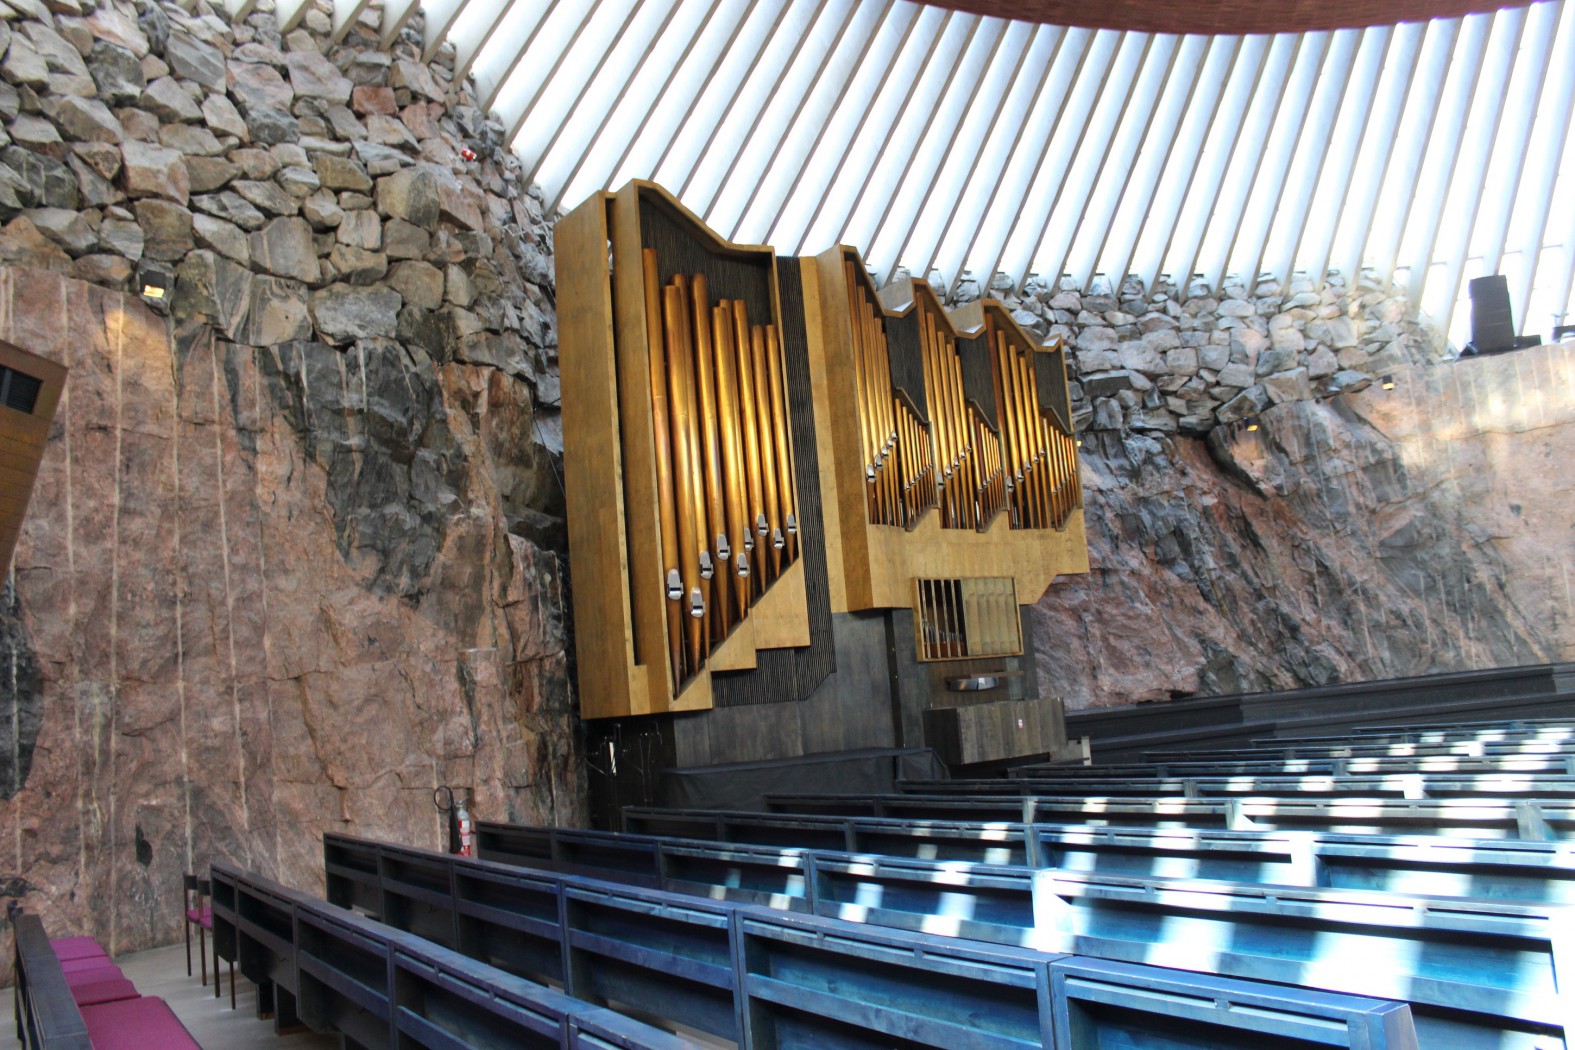 Церковь в скале в хельсинки - архитектура и фотографии интерьера храма